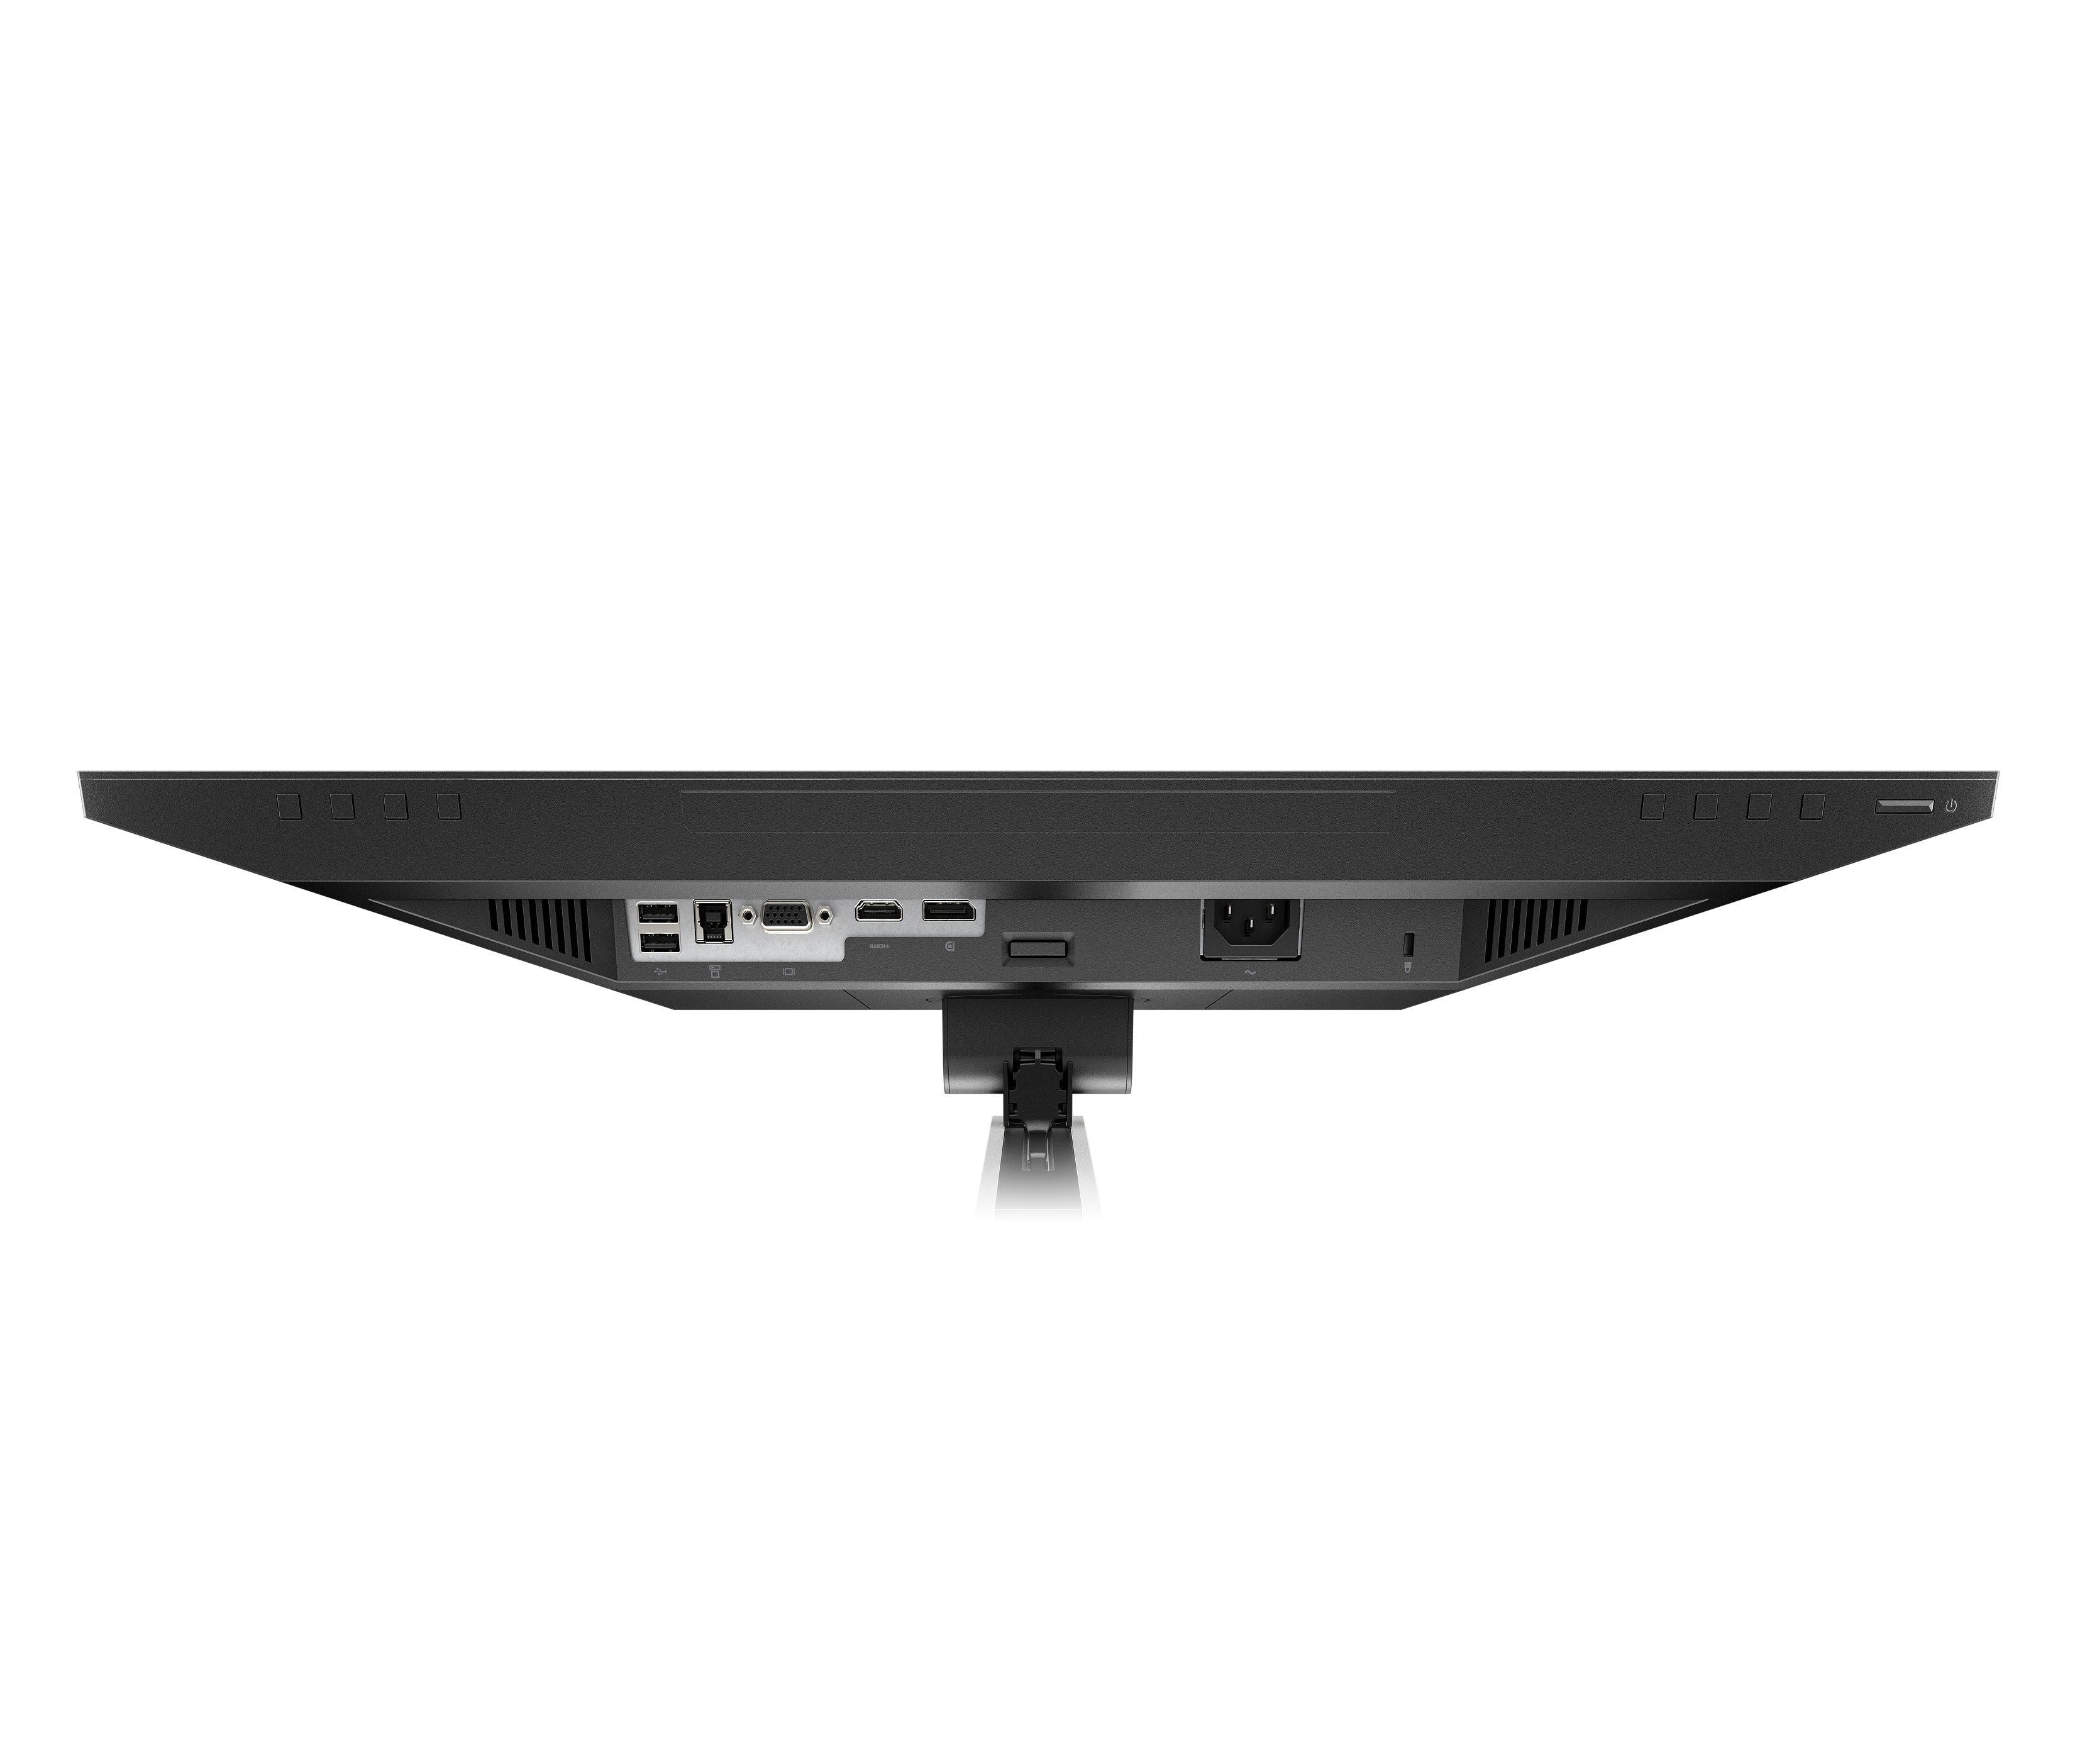 Monitor HP E24mv G4, 23.8" FHD IPS, HDMI/VGA/DP/USB-A Cámara, Microfono, Parlantes